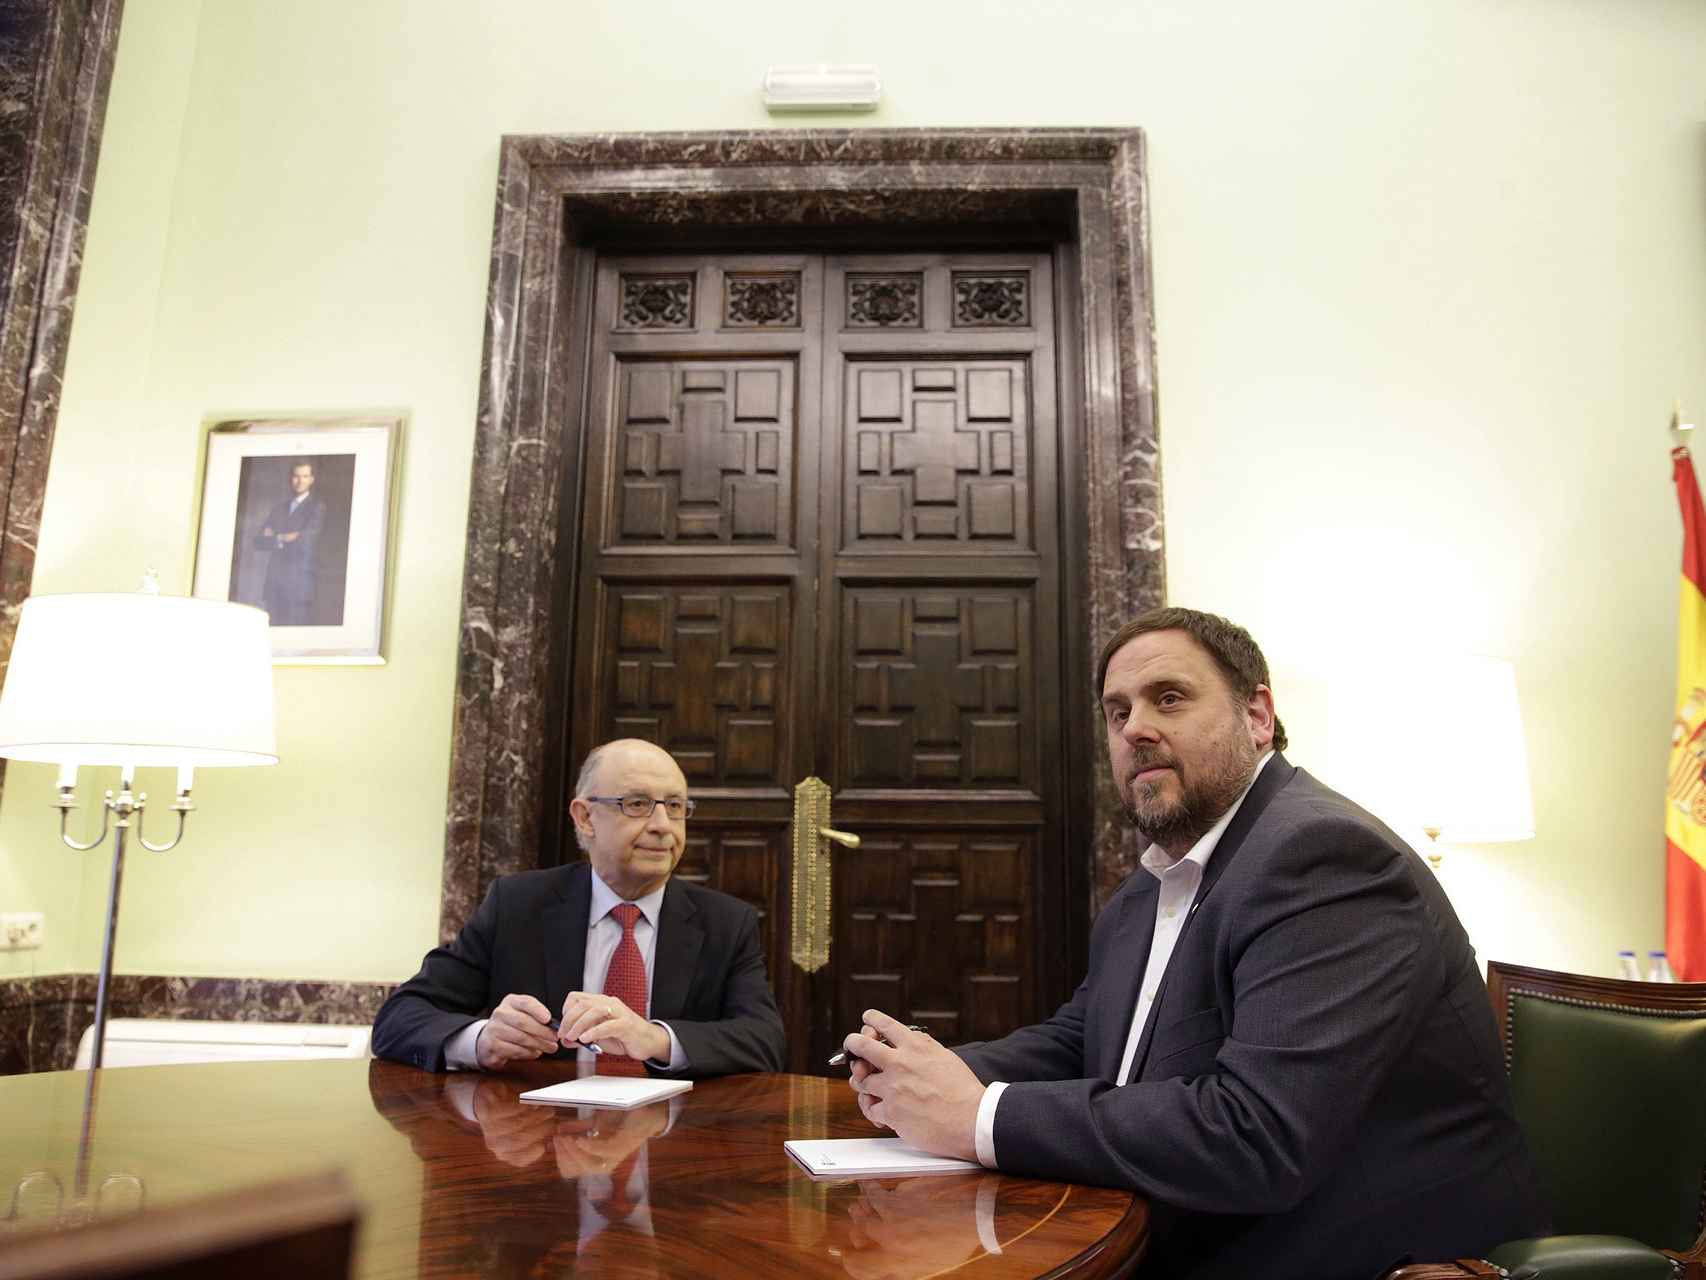 Cristóbal Montoro y Oriol Junqueras en una reunión en marzo en  Madrid.